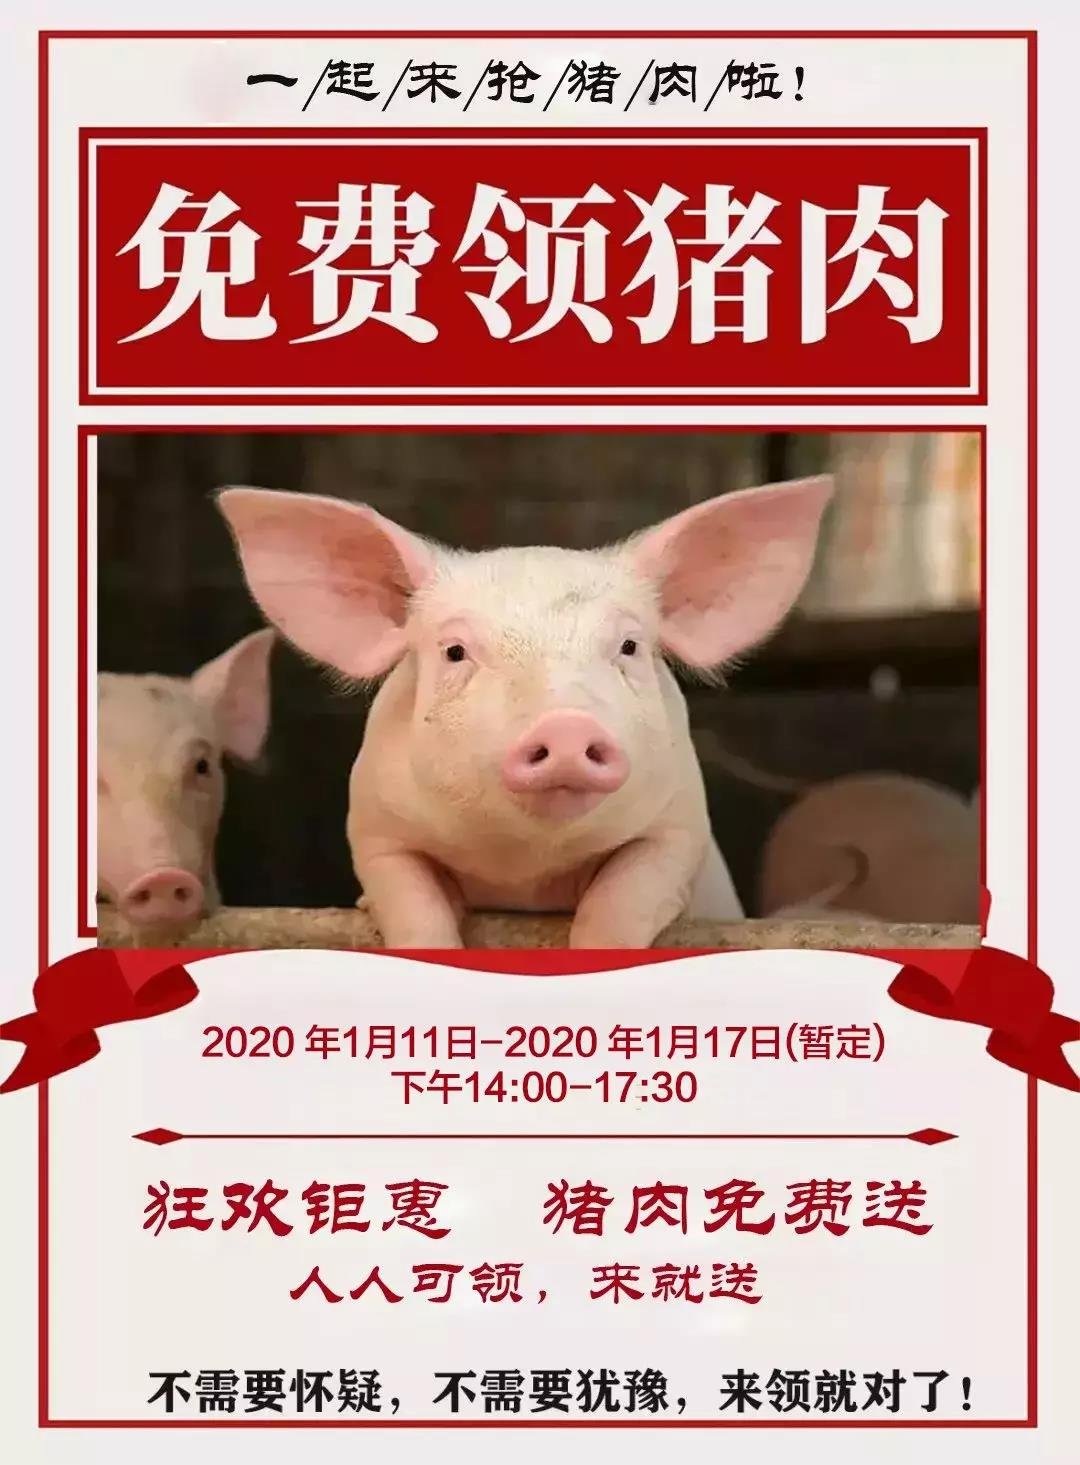 您有一份猪肉兑换券待领取!东阳国际金楠城，免费领猪肉!